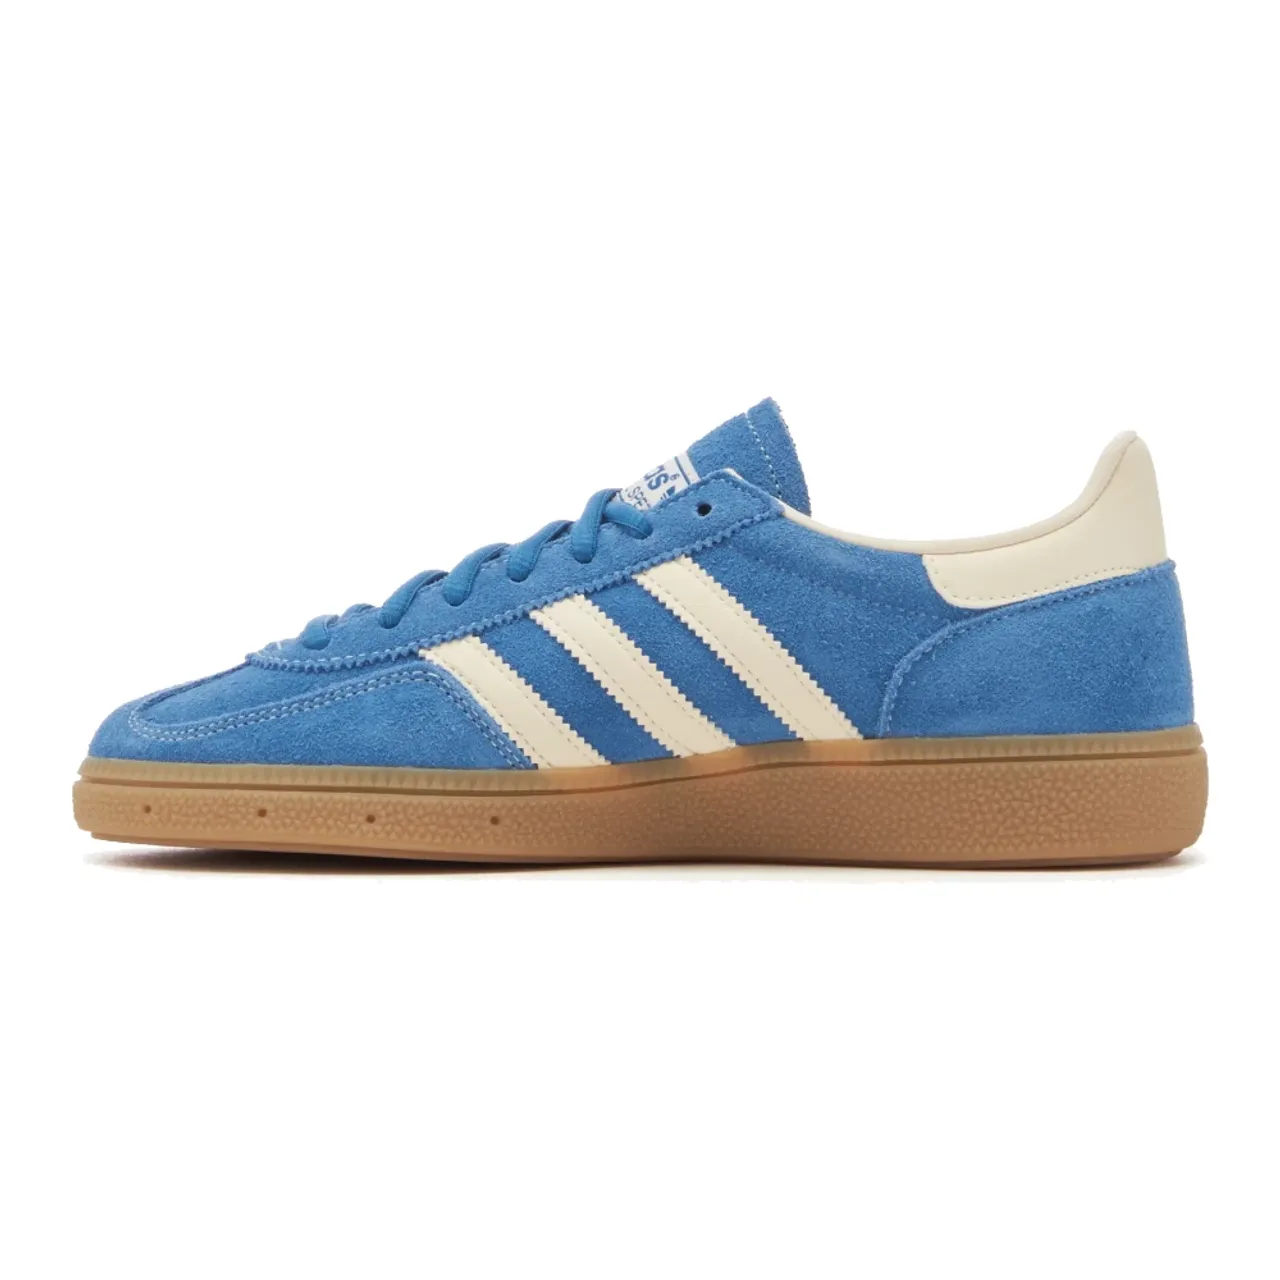 Adidas , Adidas Handball Spezial Core Blue, Cream White Crystal White-40 ,Blue male, Sizes: 9 1/3 UK, 7 1/3 UK, 3 1/3 UK, 4 UK, 5 1/3 UK, 2 UK, 12 UK